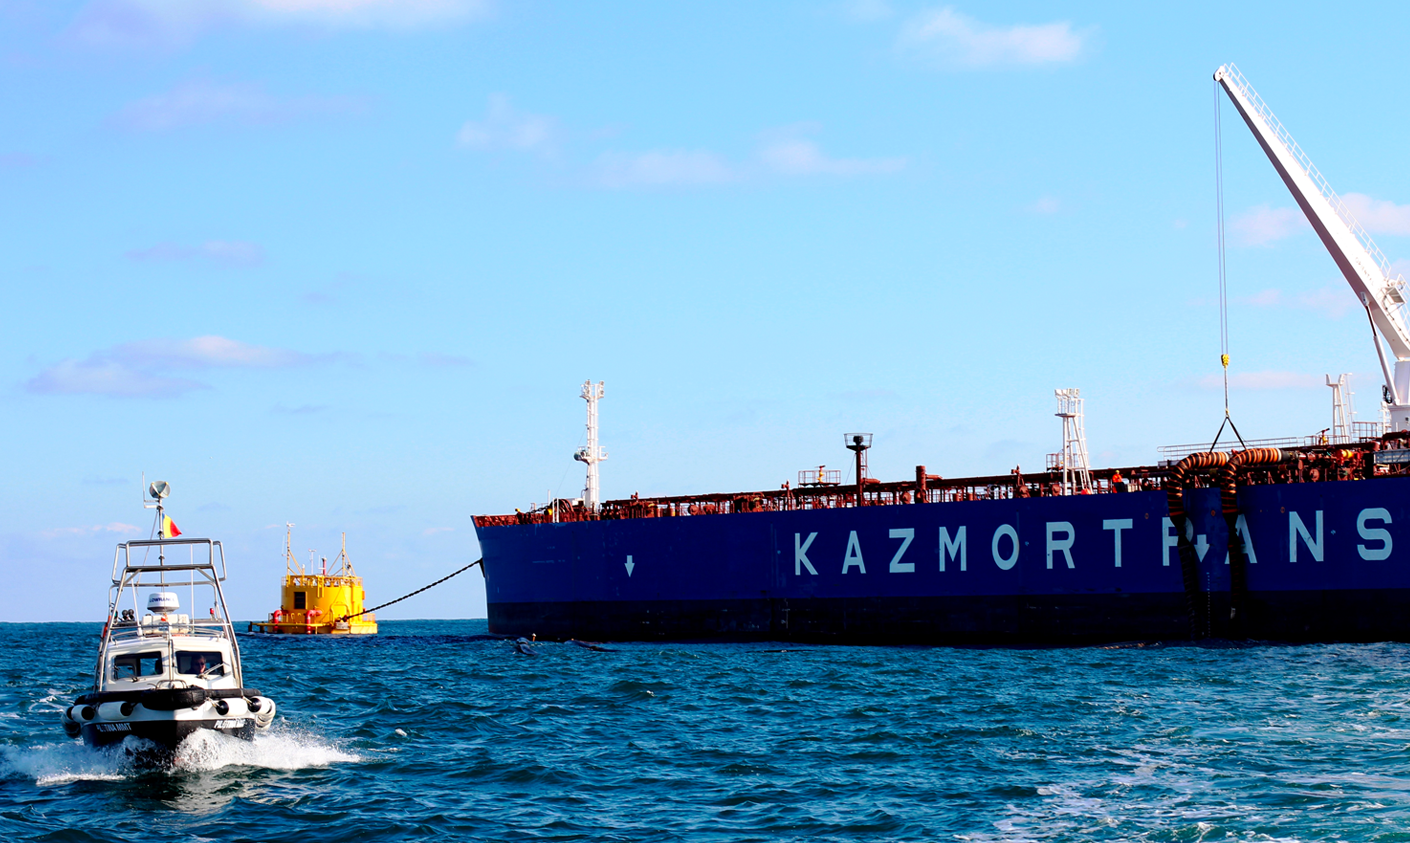 Peste 32 milioane de tone de titei transferat de catre KMG International prin Terminalul Maritim de la Marea Neagra in 10 ani de activitate